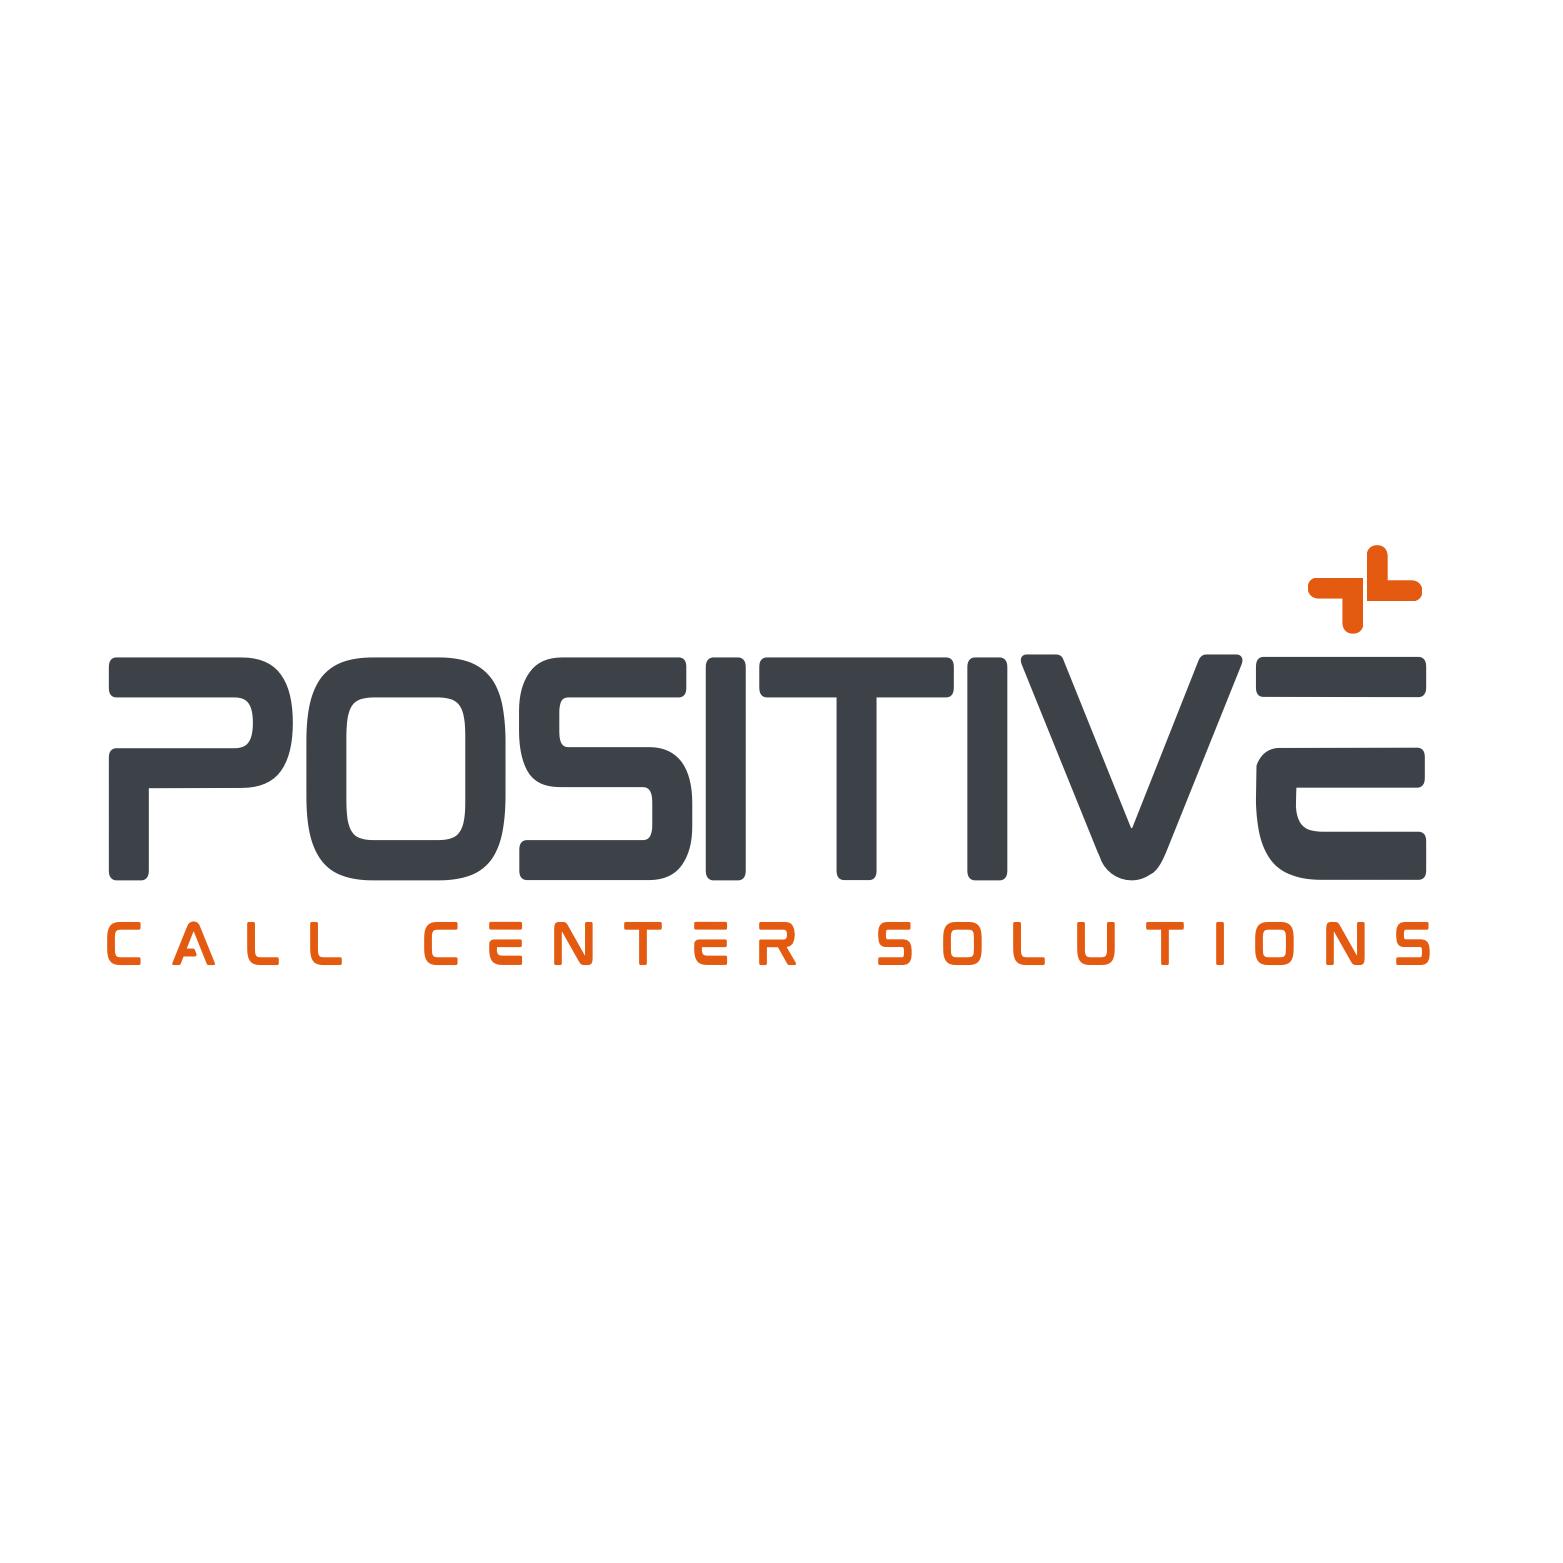 Positive Call Center